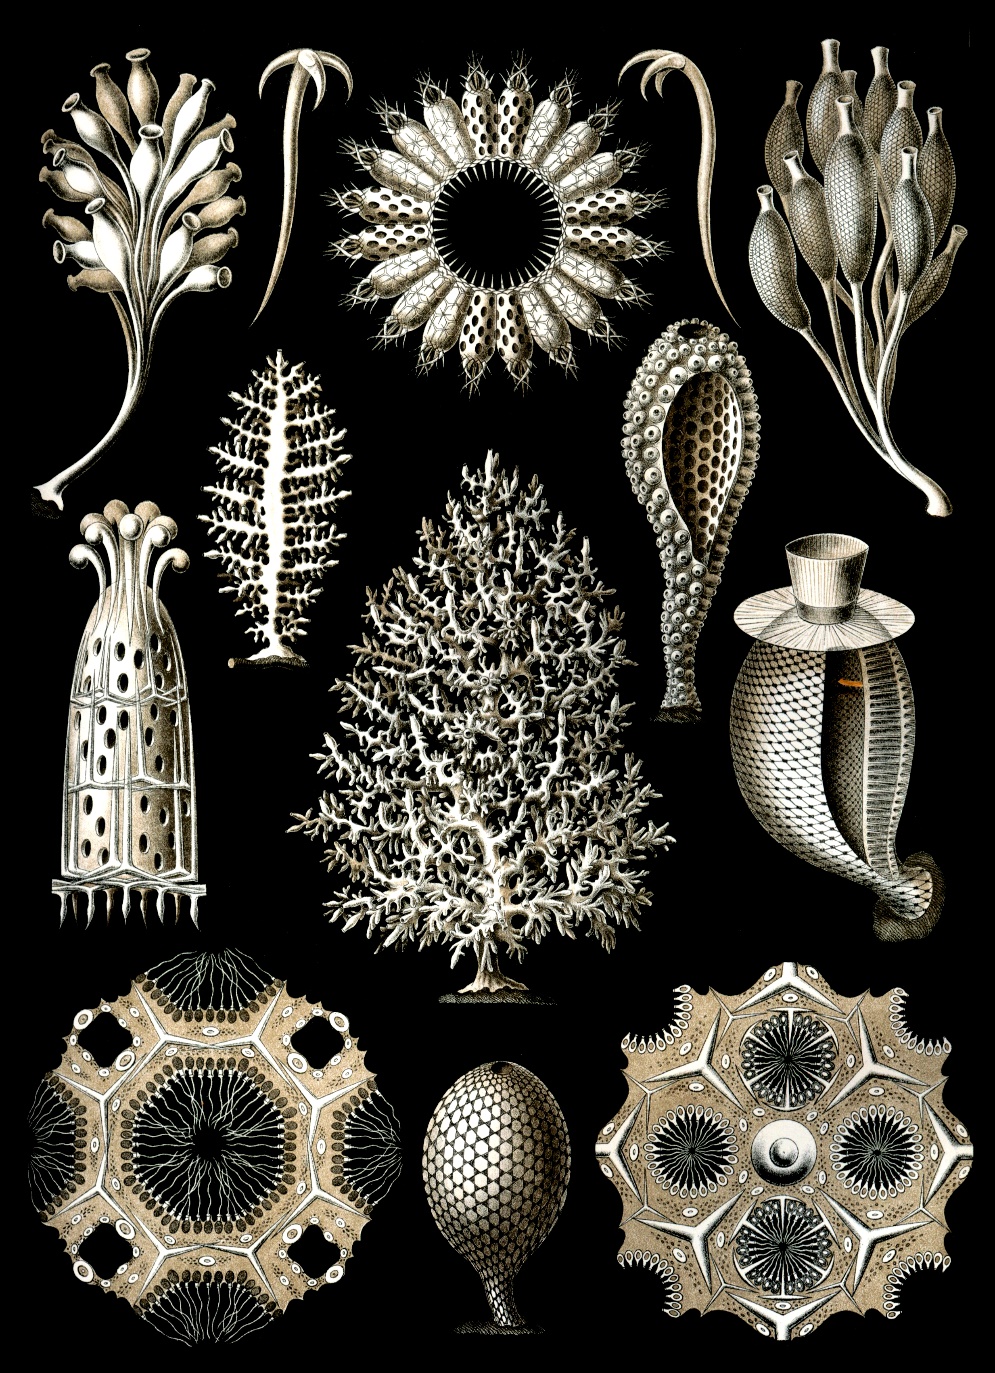 Planche d'éponges calcaires par Ernst Haeckel